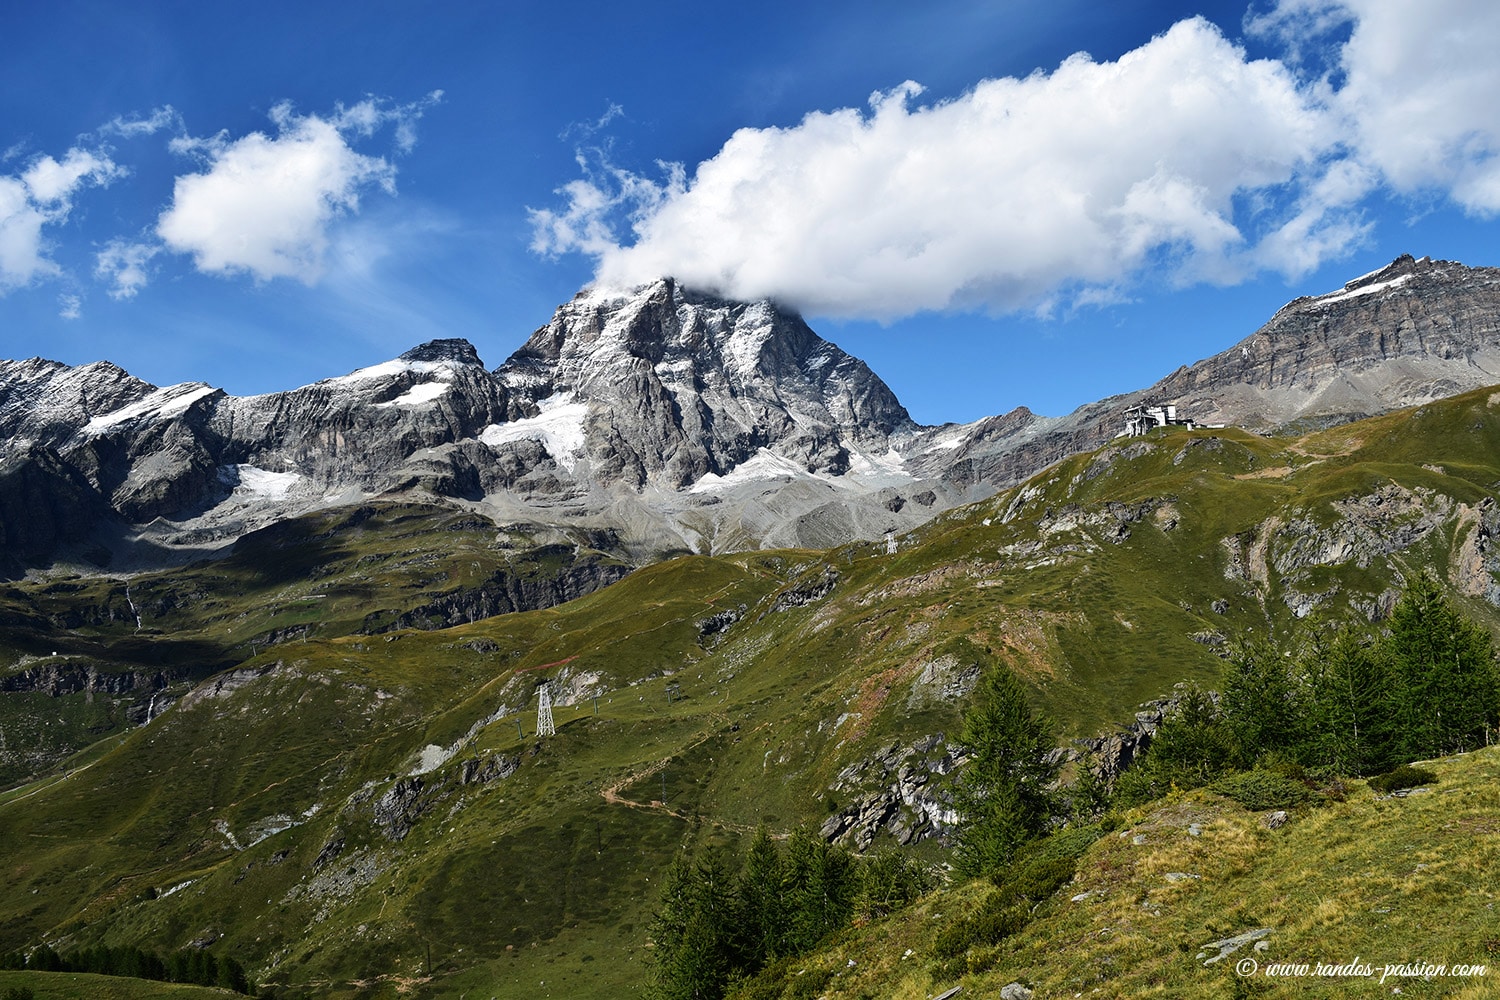 Randonnée de Valtournenche à Breuil-Cervinia par le col de Cime Bianche